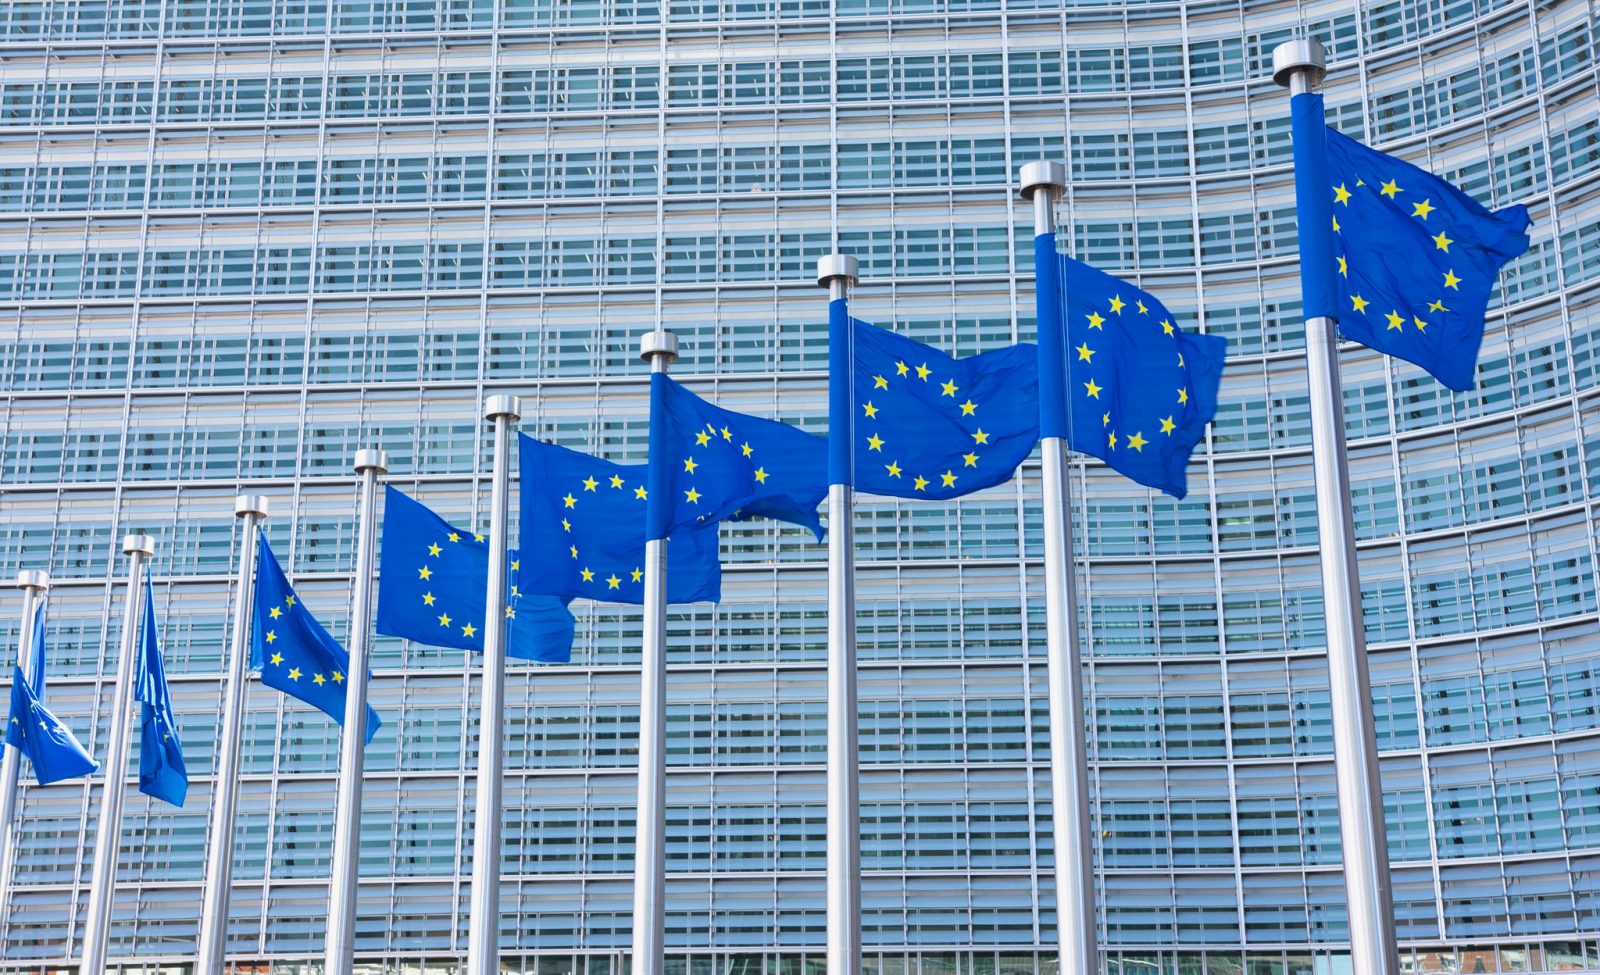 Brevetti essenziali standard, nuove regole per rafforzare l’innovazione nella UE